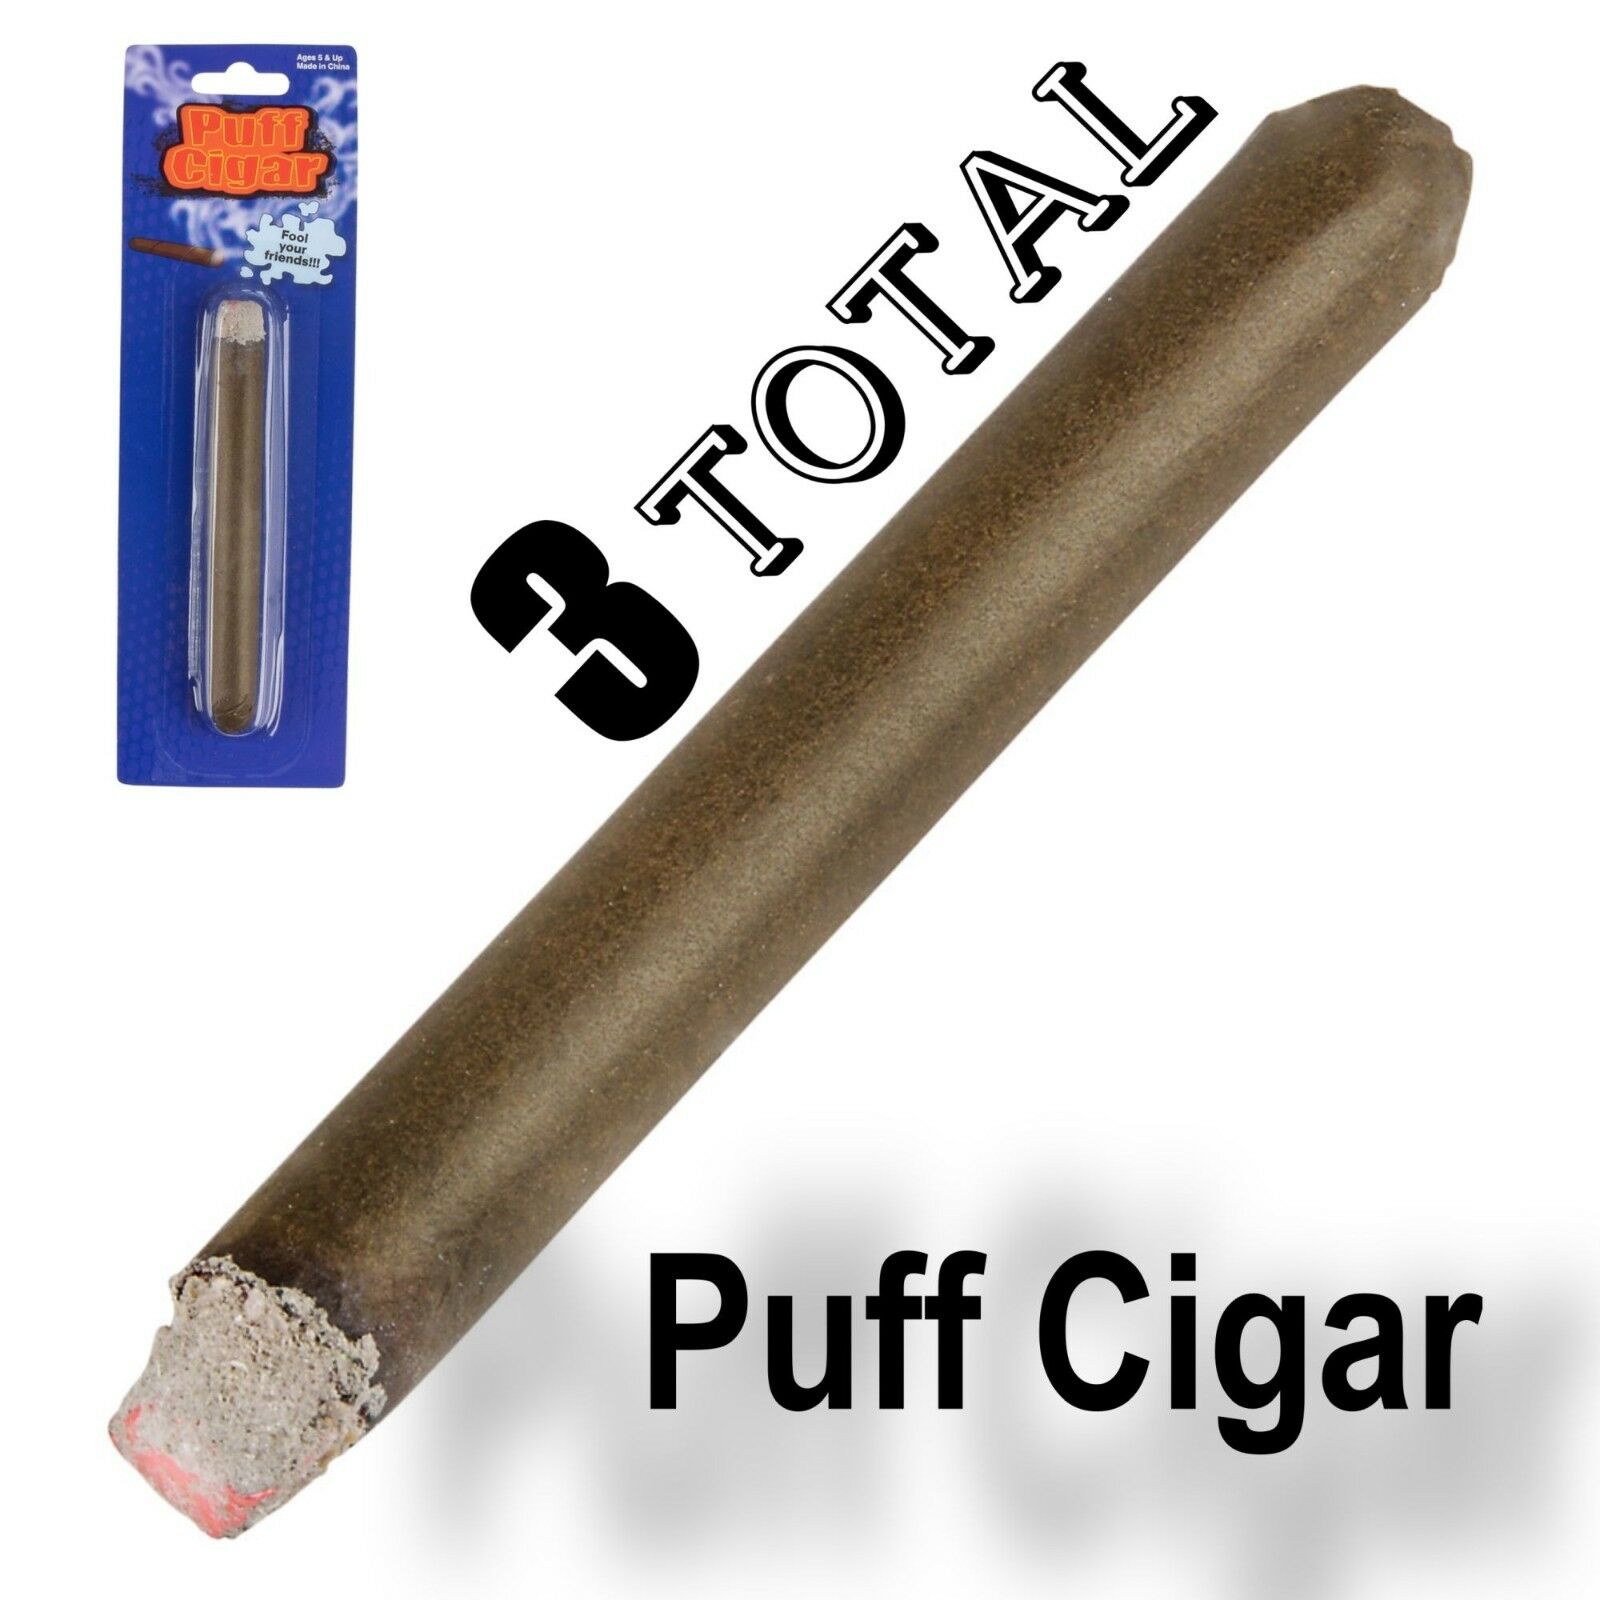 3 Fake Puff Cigar Smoke Powder Magic Trick Joke Gag Prop Smoking Prank Toy